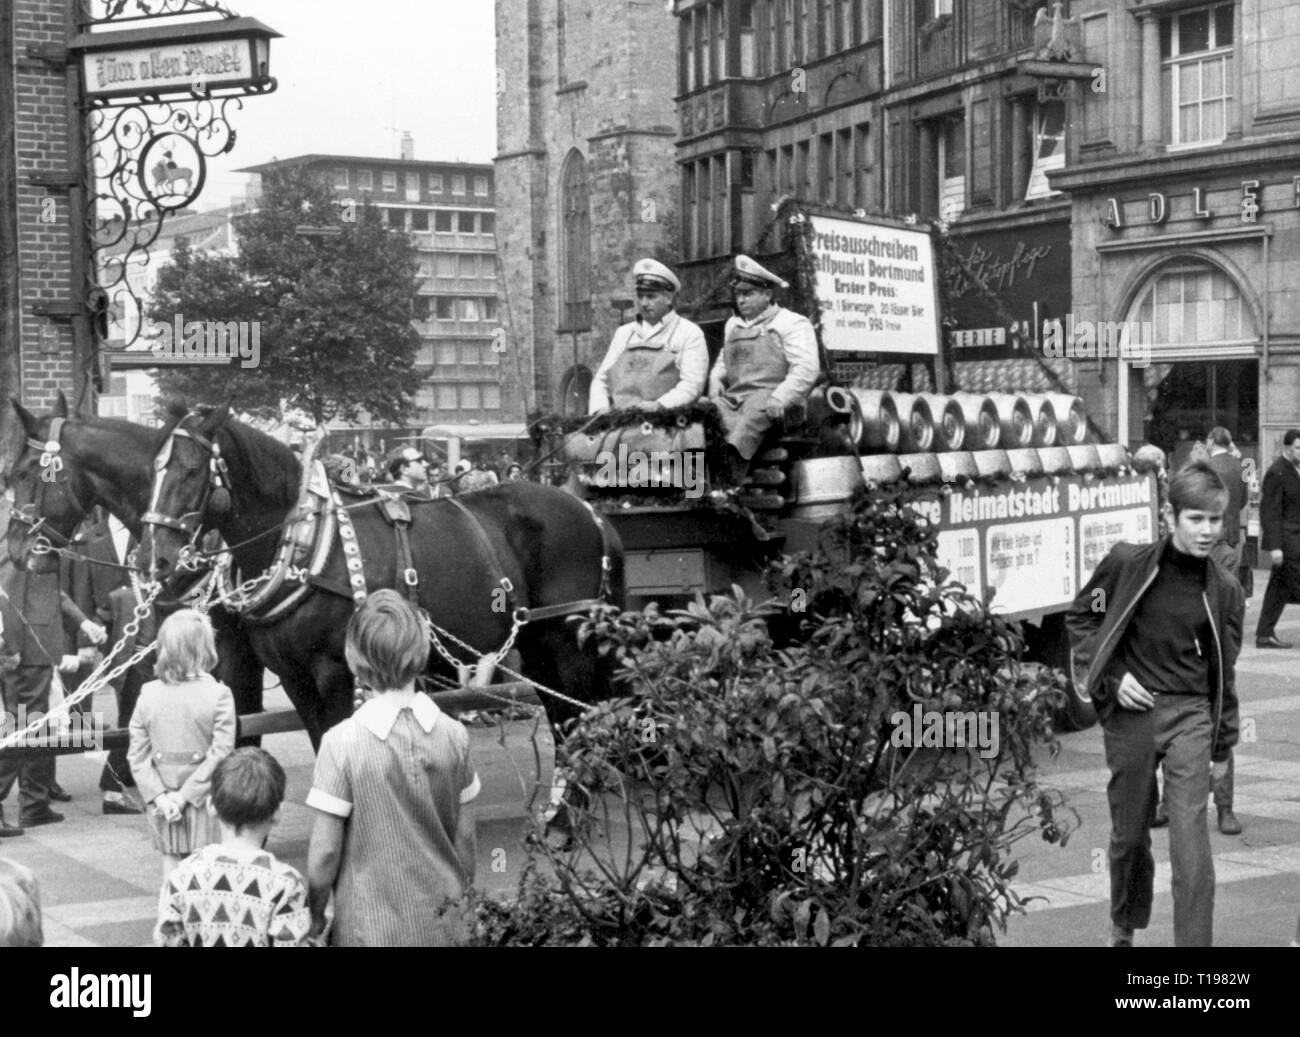 Spiel, Gewinnspiel, Wettbewerb" Treffpunkt Dortmund", erster Preis: 20 Fässer Bier, Bier reefer am Markt, 1969, Additional-Rights - Clearance-Info - Not-Available Stockfoto